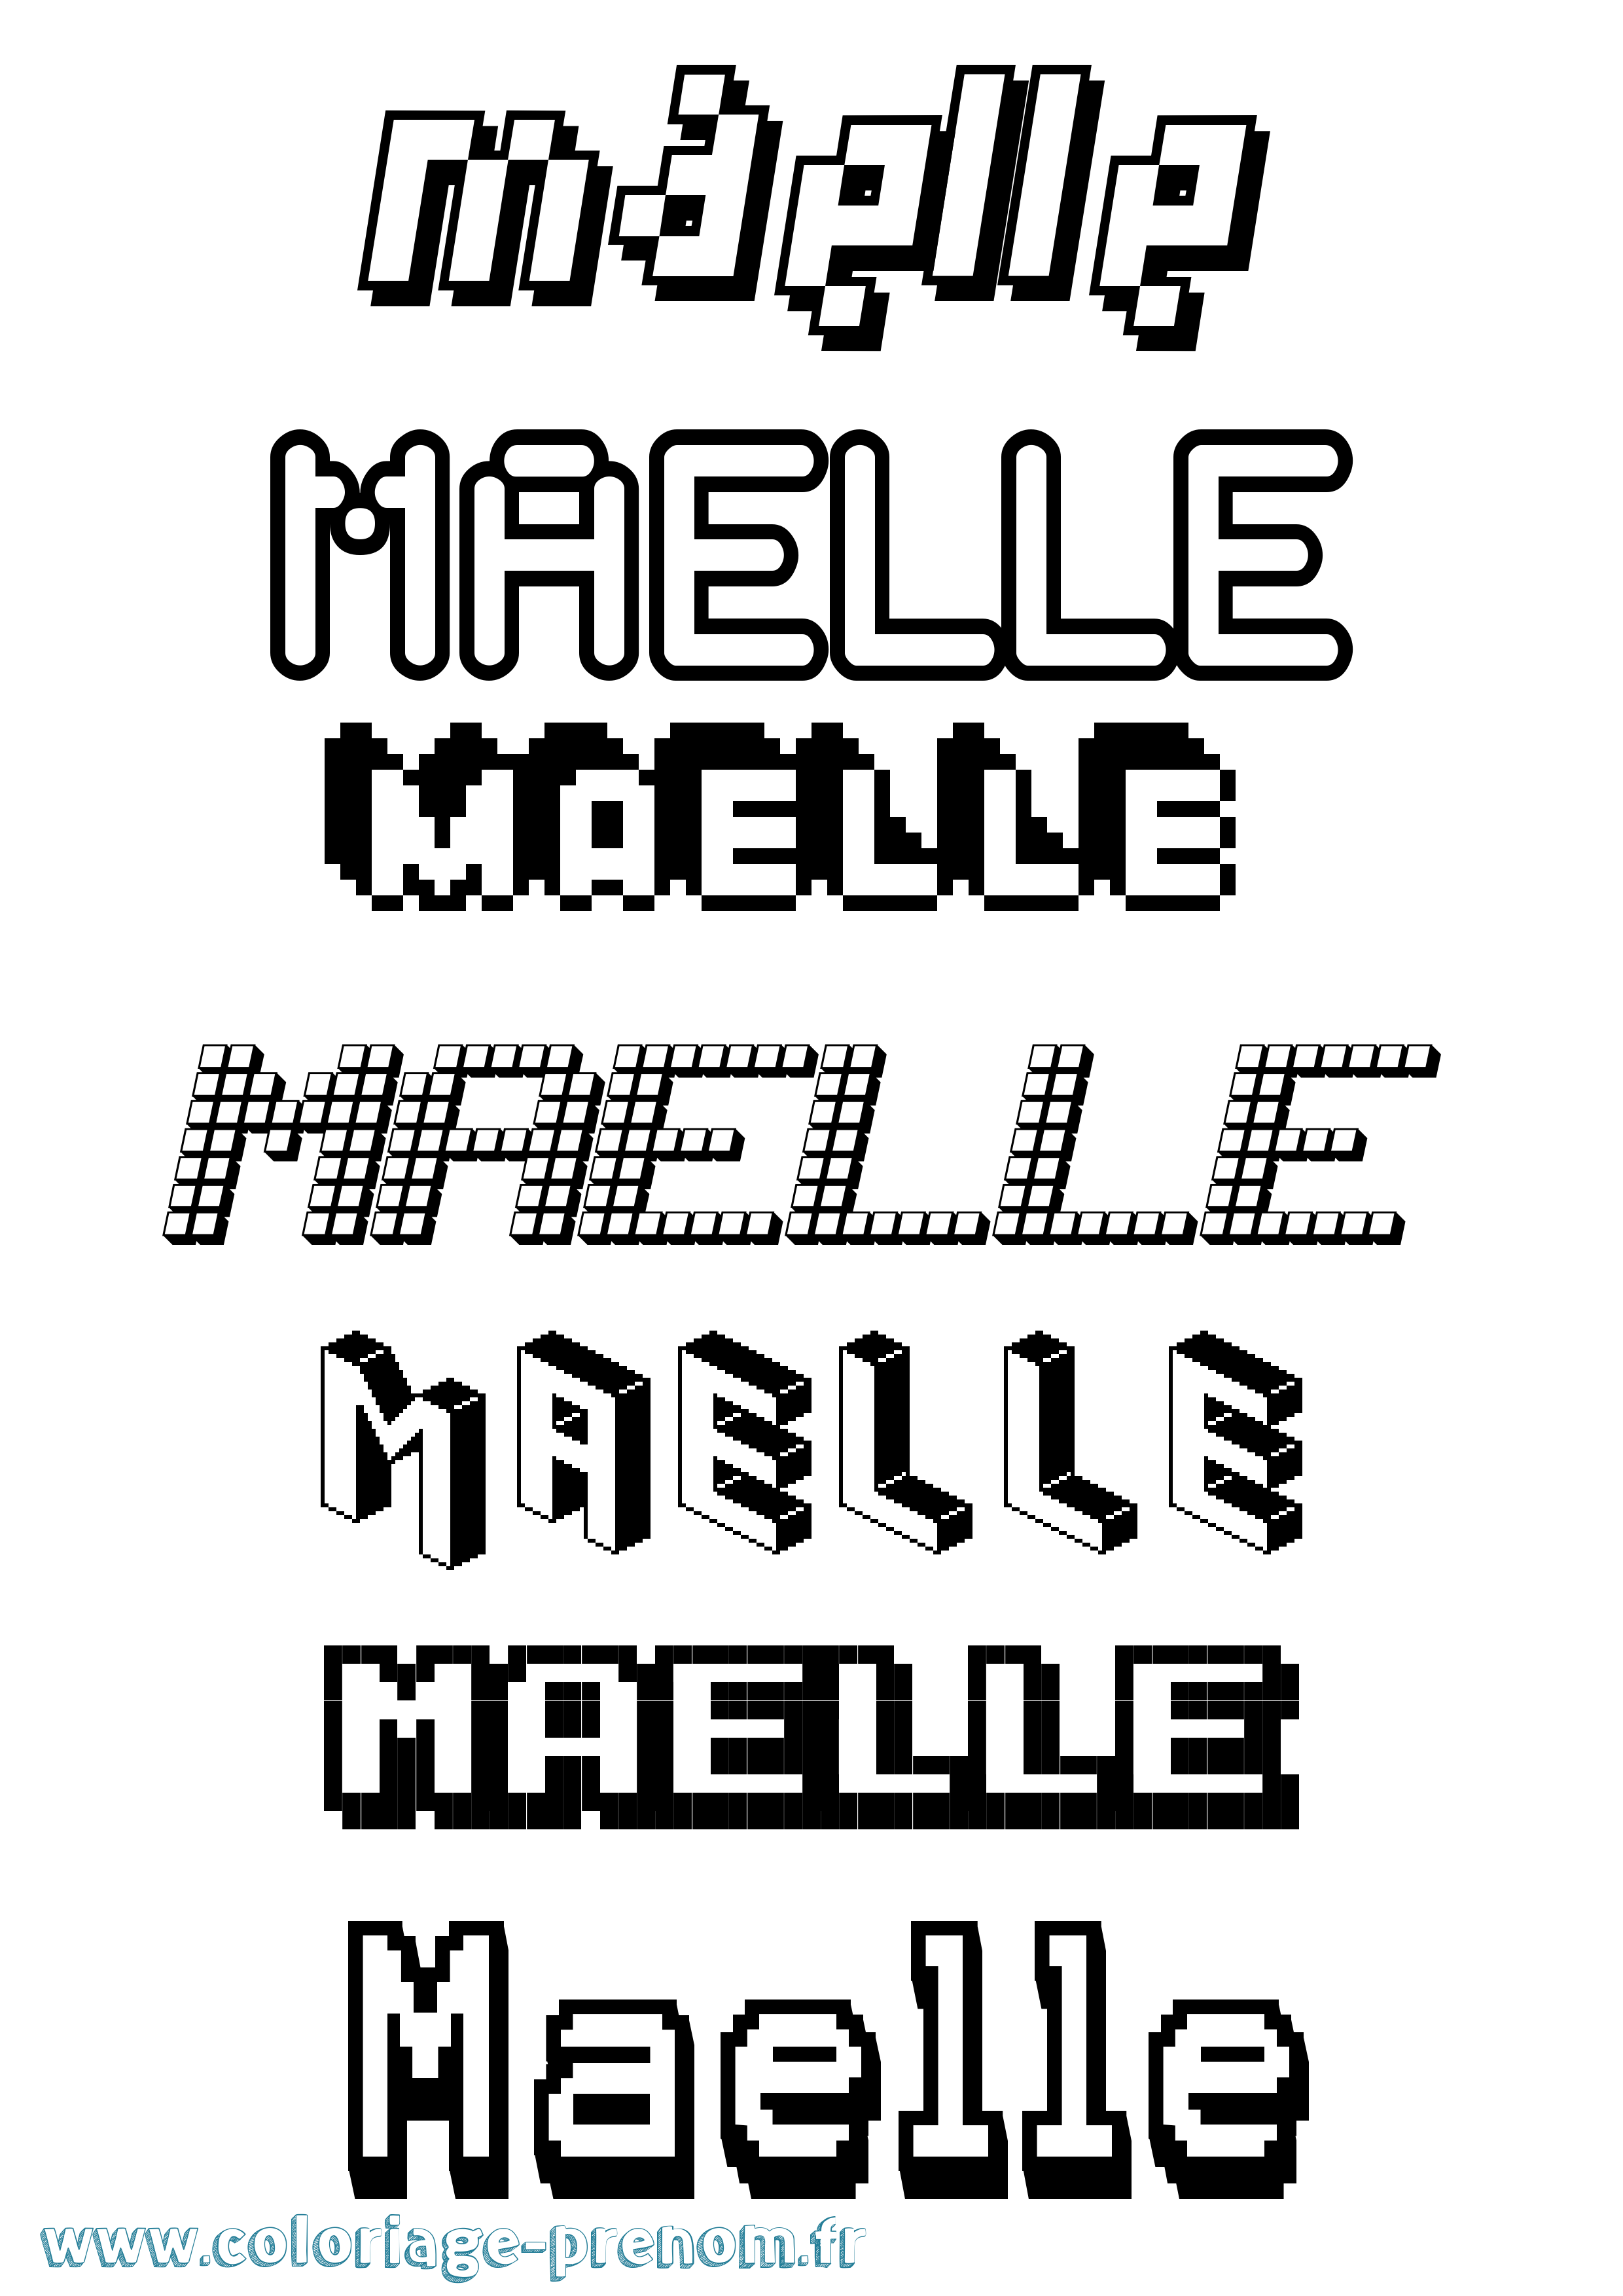 Coloriage prénom Maelle Pixel